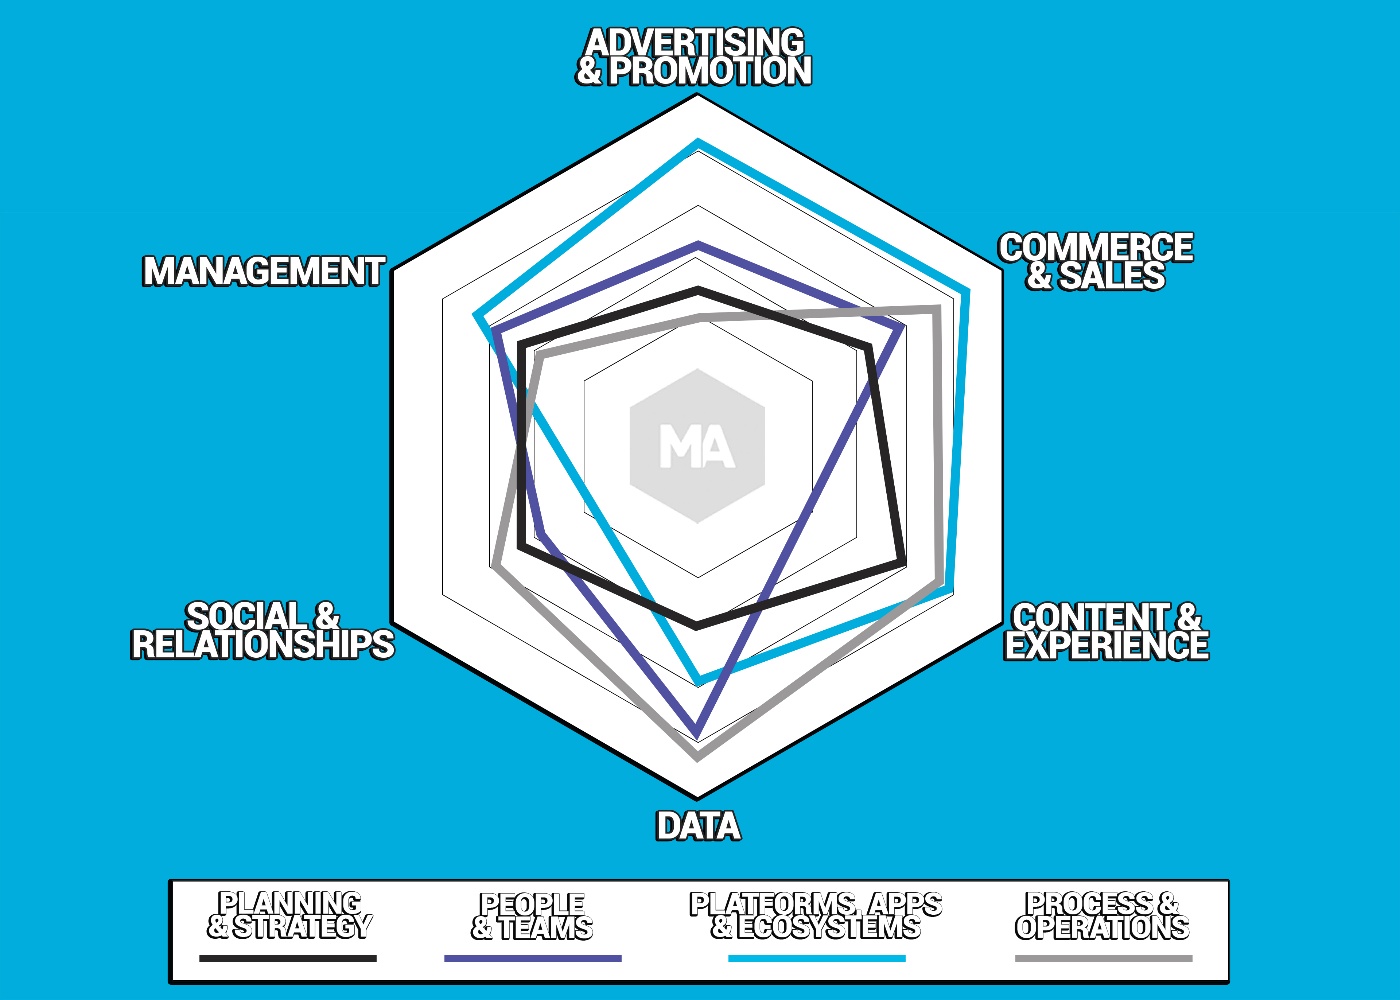 Marketing technology maturity mapping